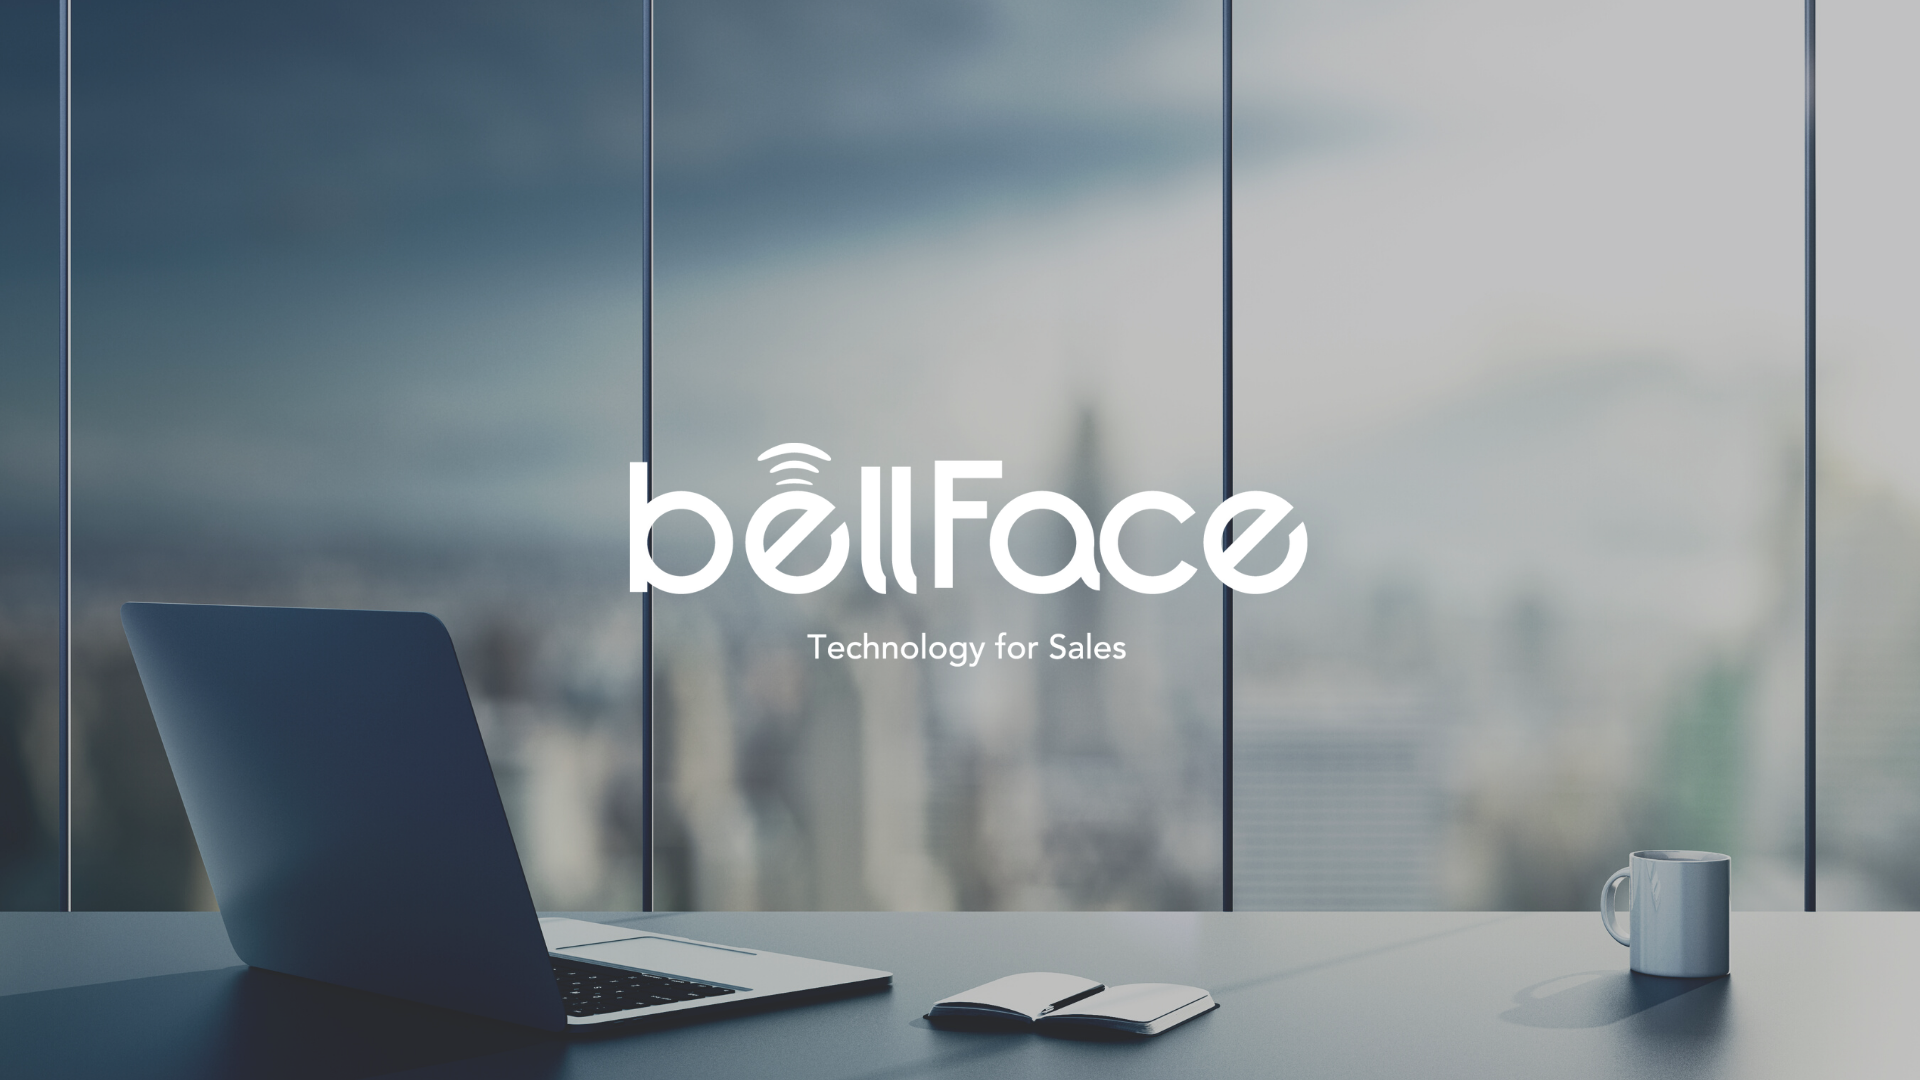 チームで売上を最大化する国内No.1のオンライン営業システム『bellFace』を開発・提供している。